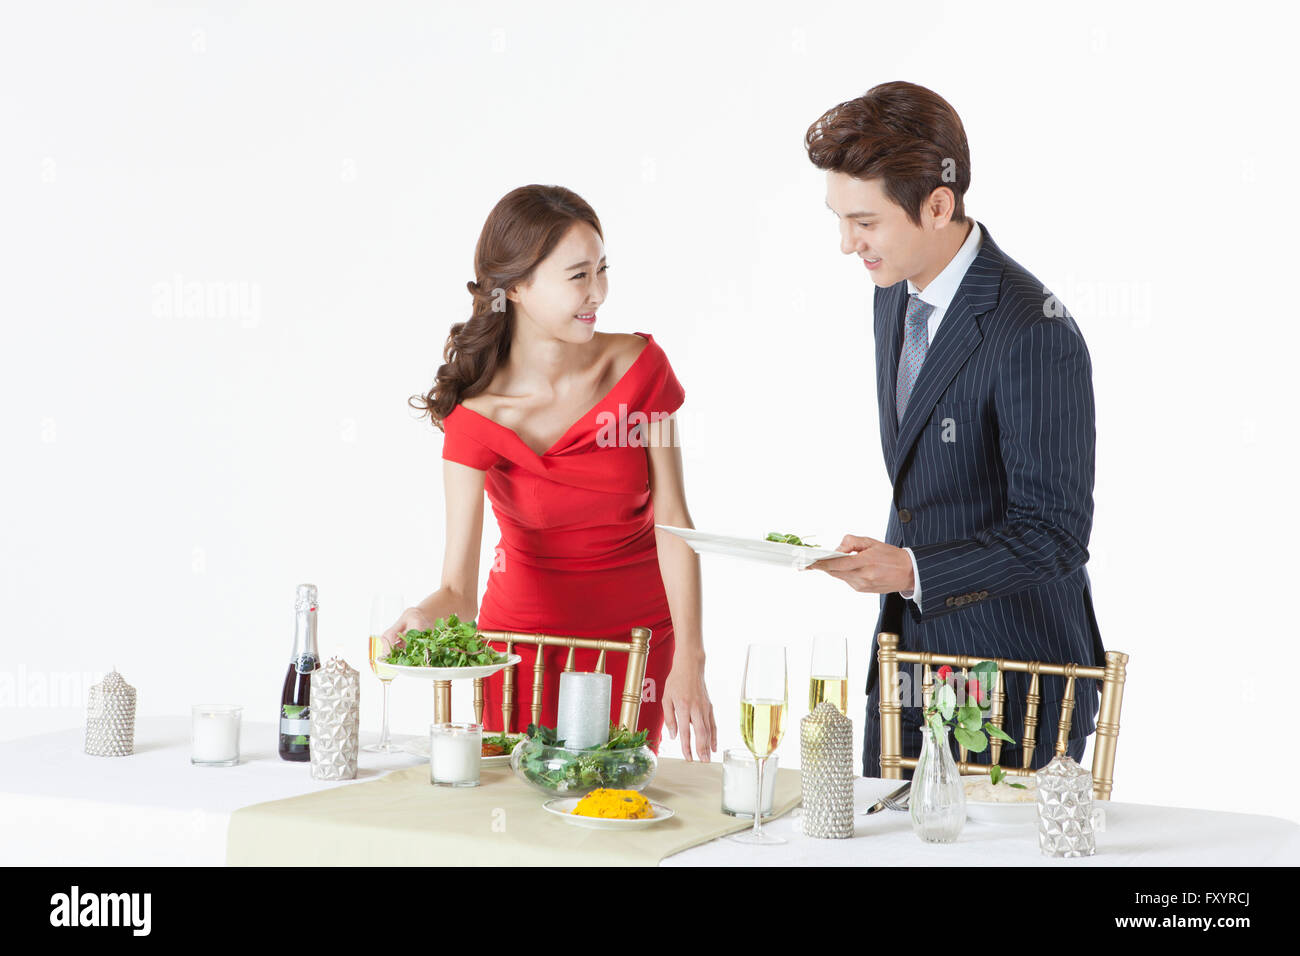 Seite Ansicht Porträt junger Mann und junge Frau mit Salaten, die lächelnd auf party Stockfoto